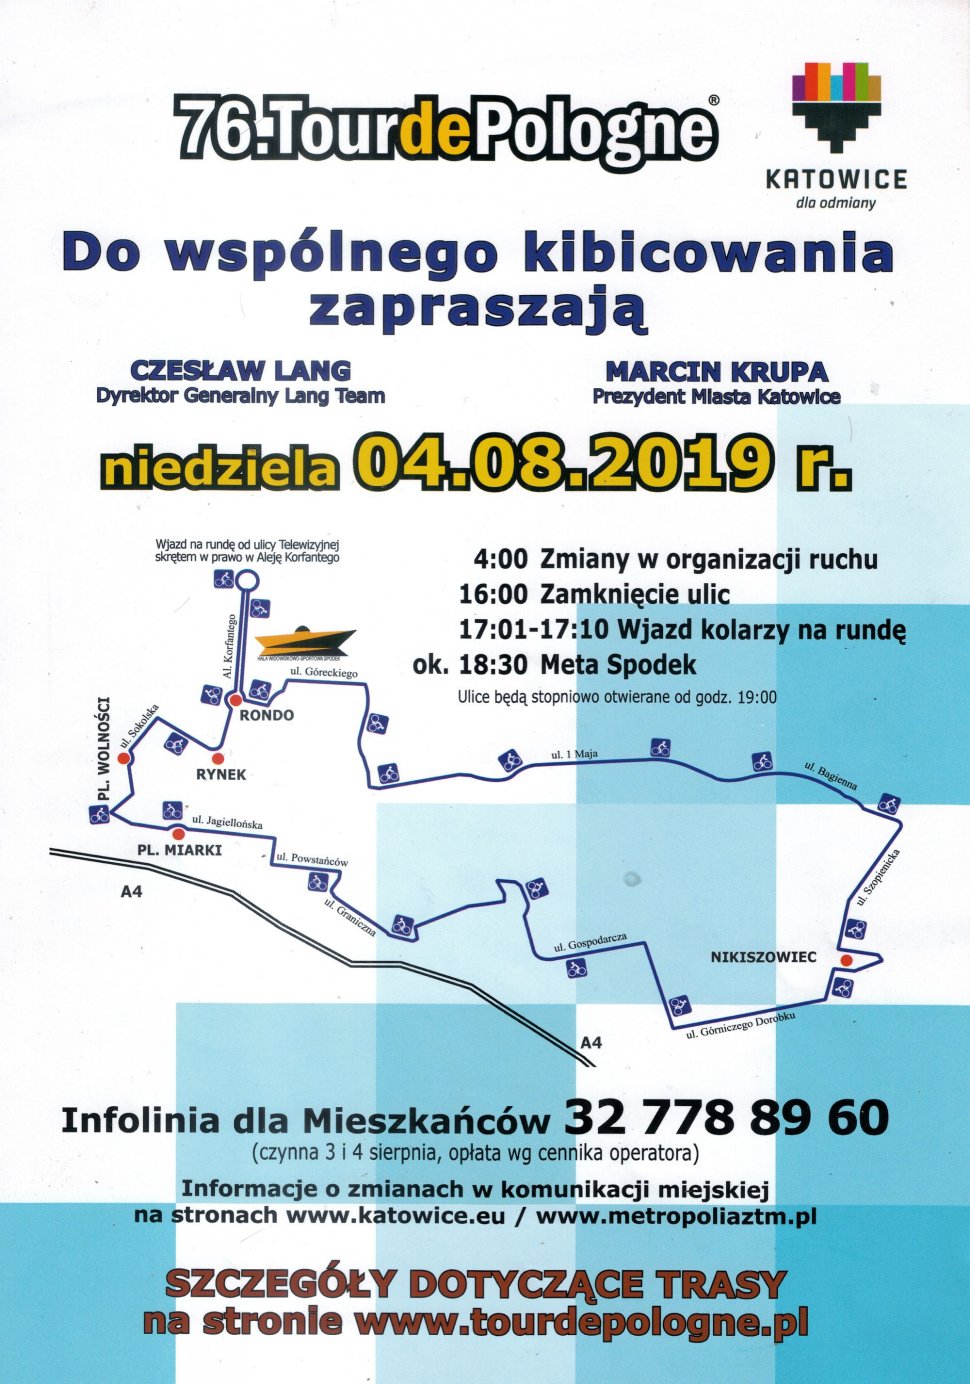 Plakat 76 Tour de Pologne etap w Katowicach widać logo Katowic w górnym prawym rogu